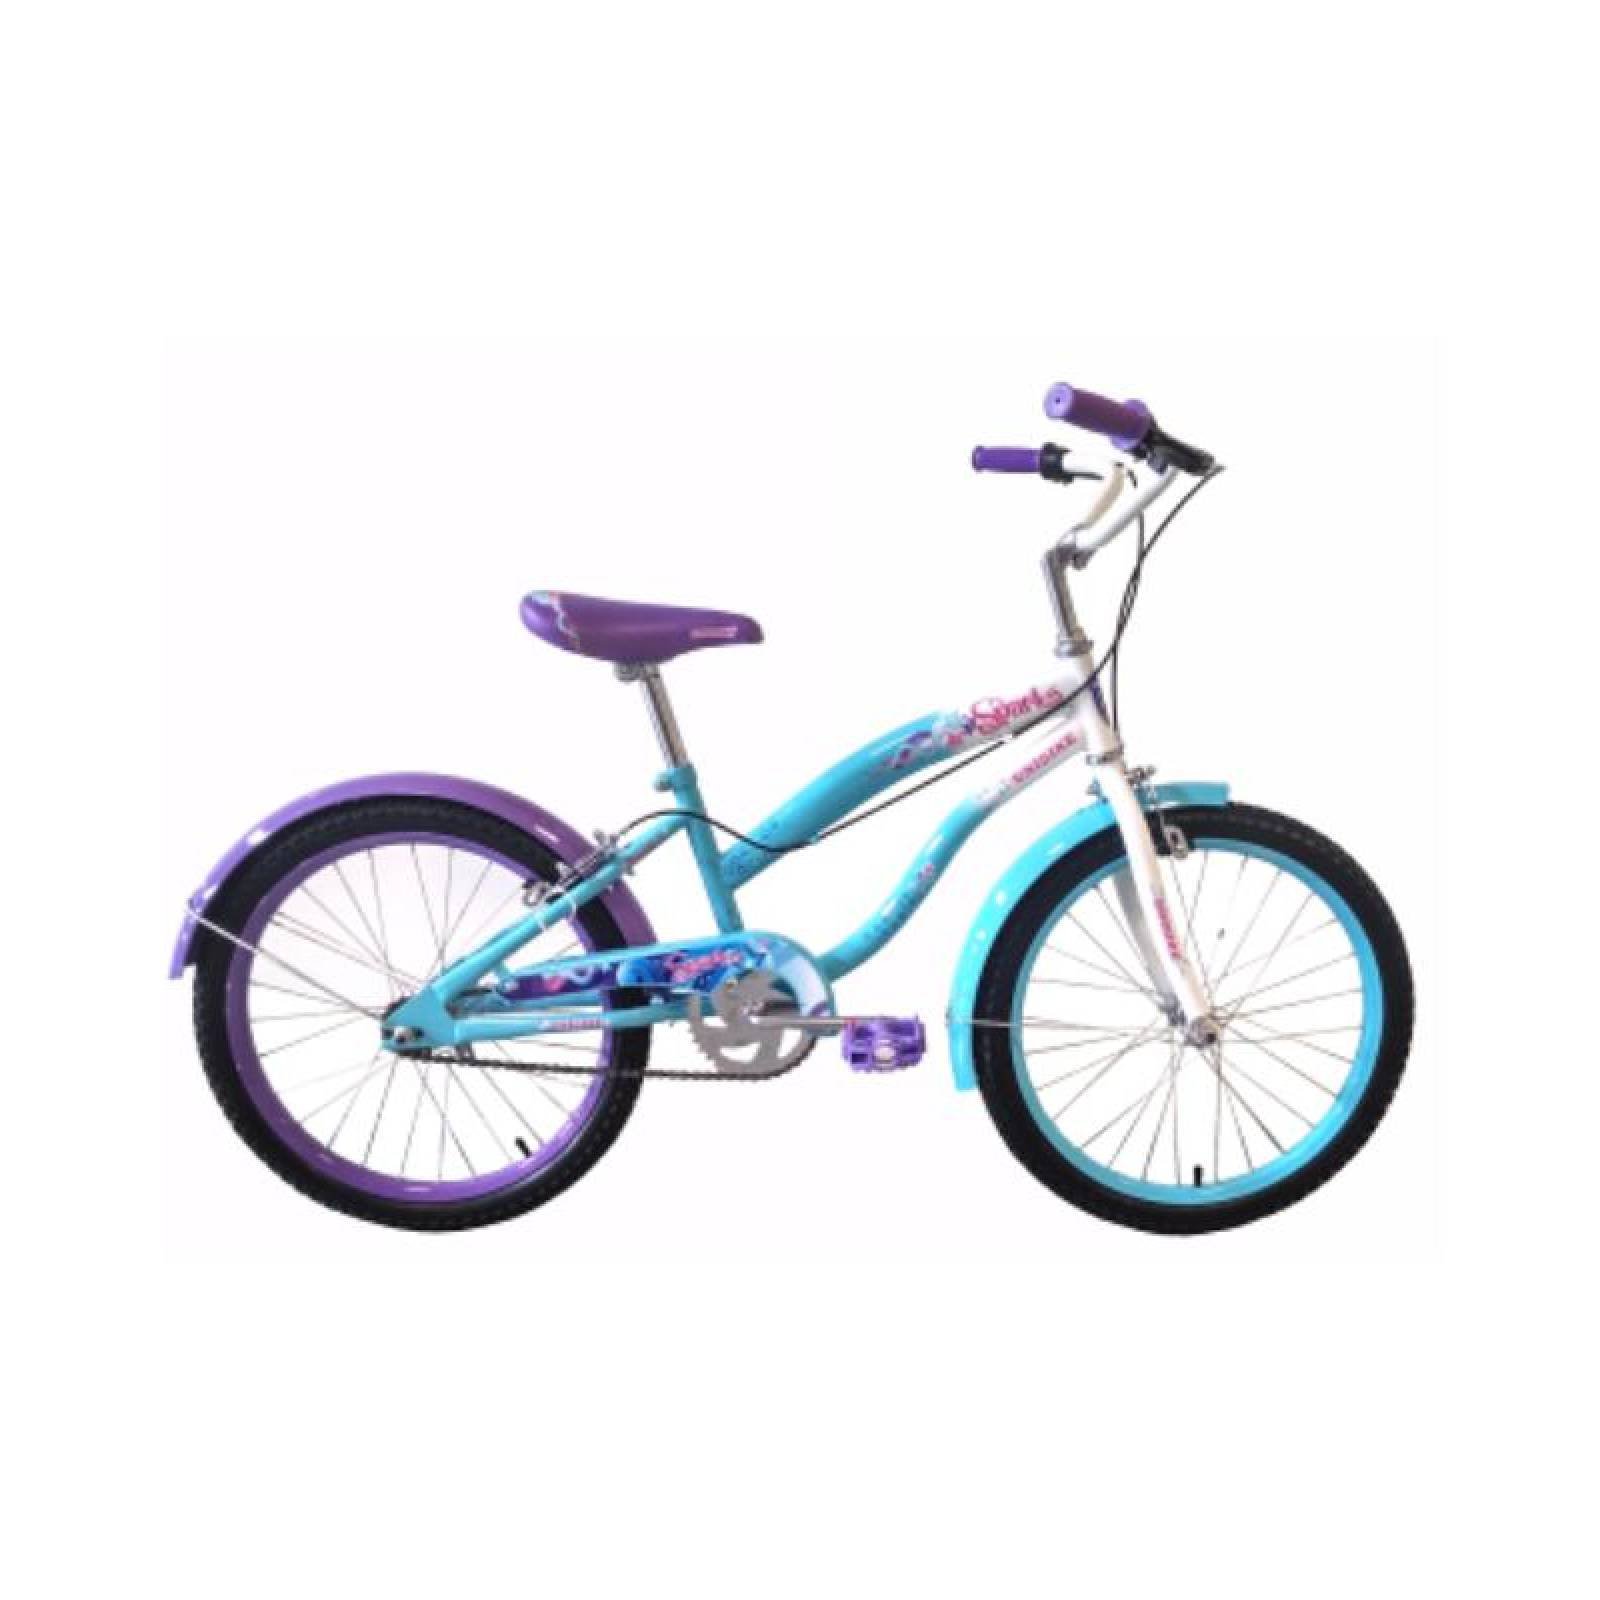 Bicicleta Infantil para 110140 cm r20 Rodada 20 Bicicletas Baratas 